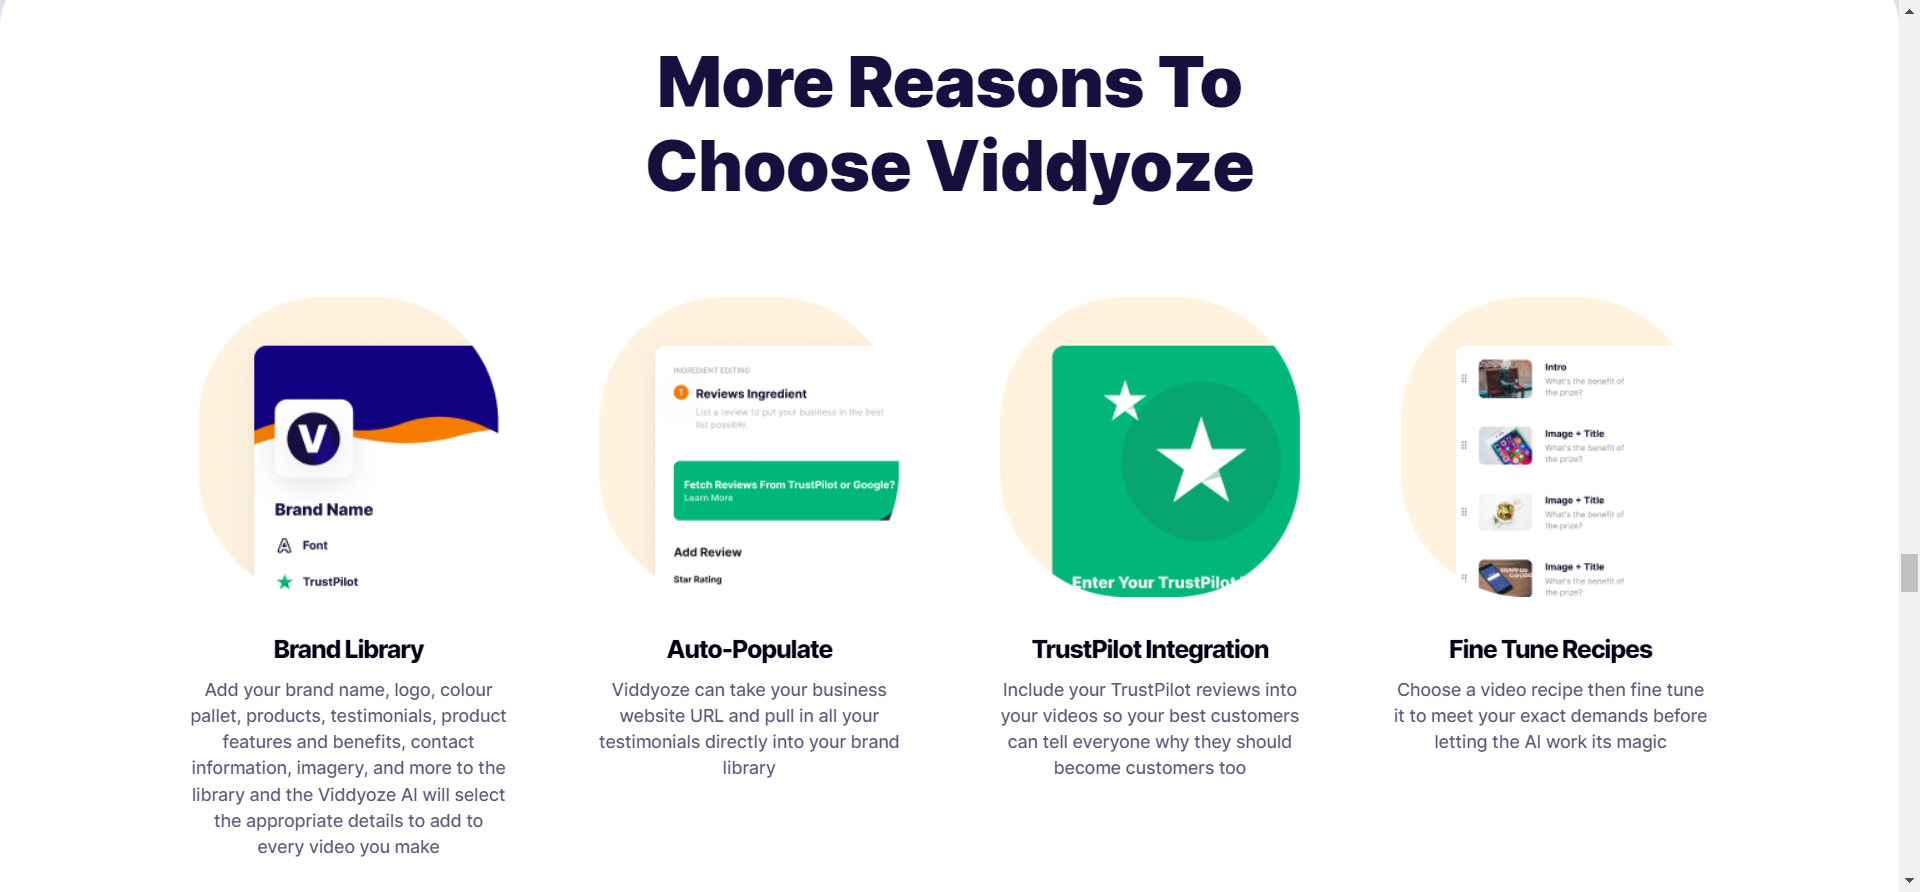 Viddyoze Features